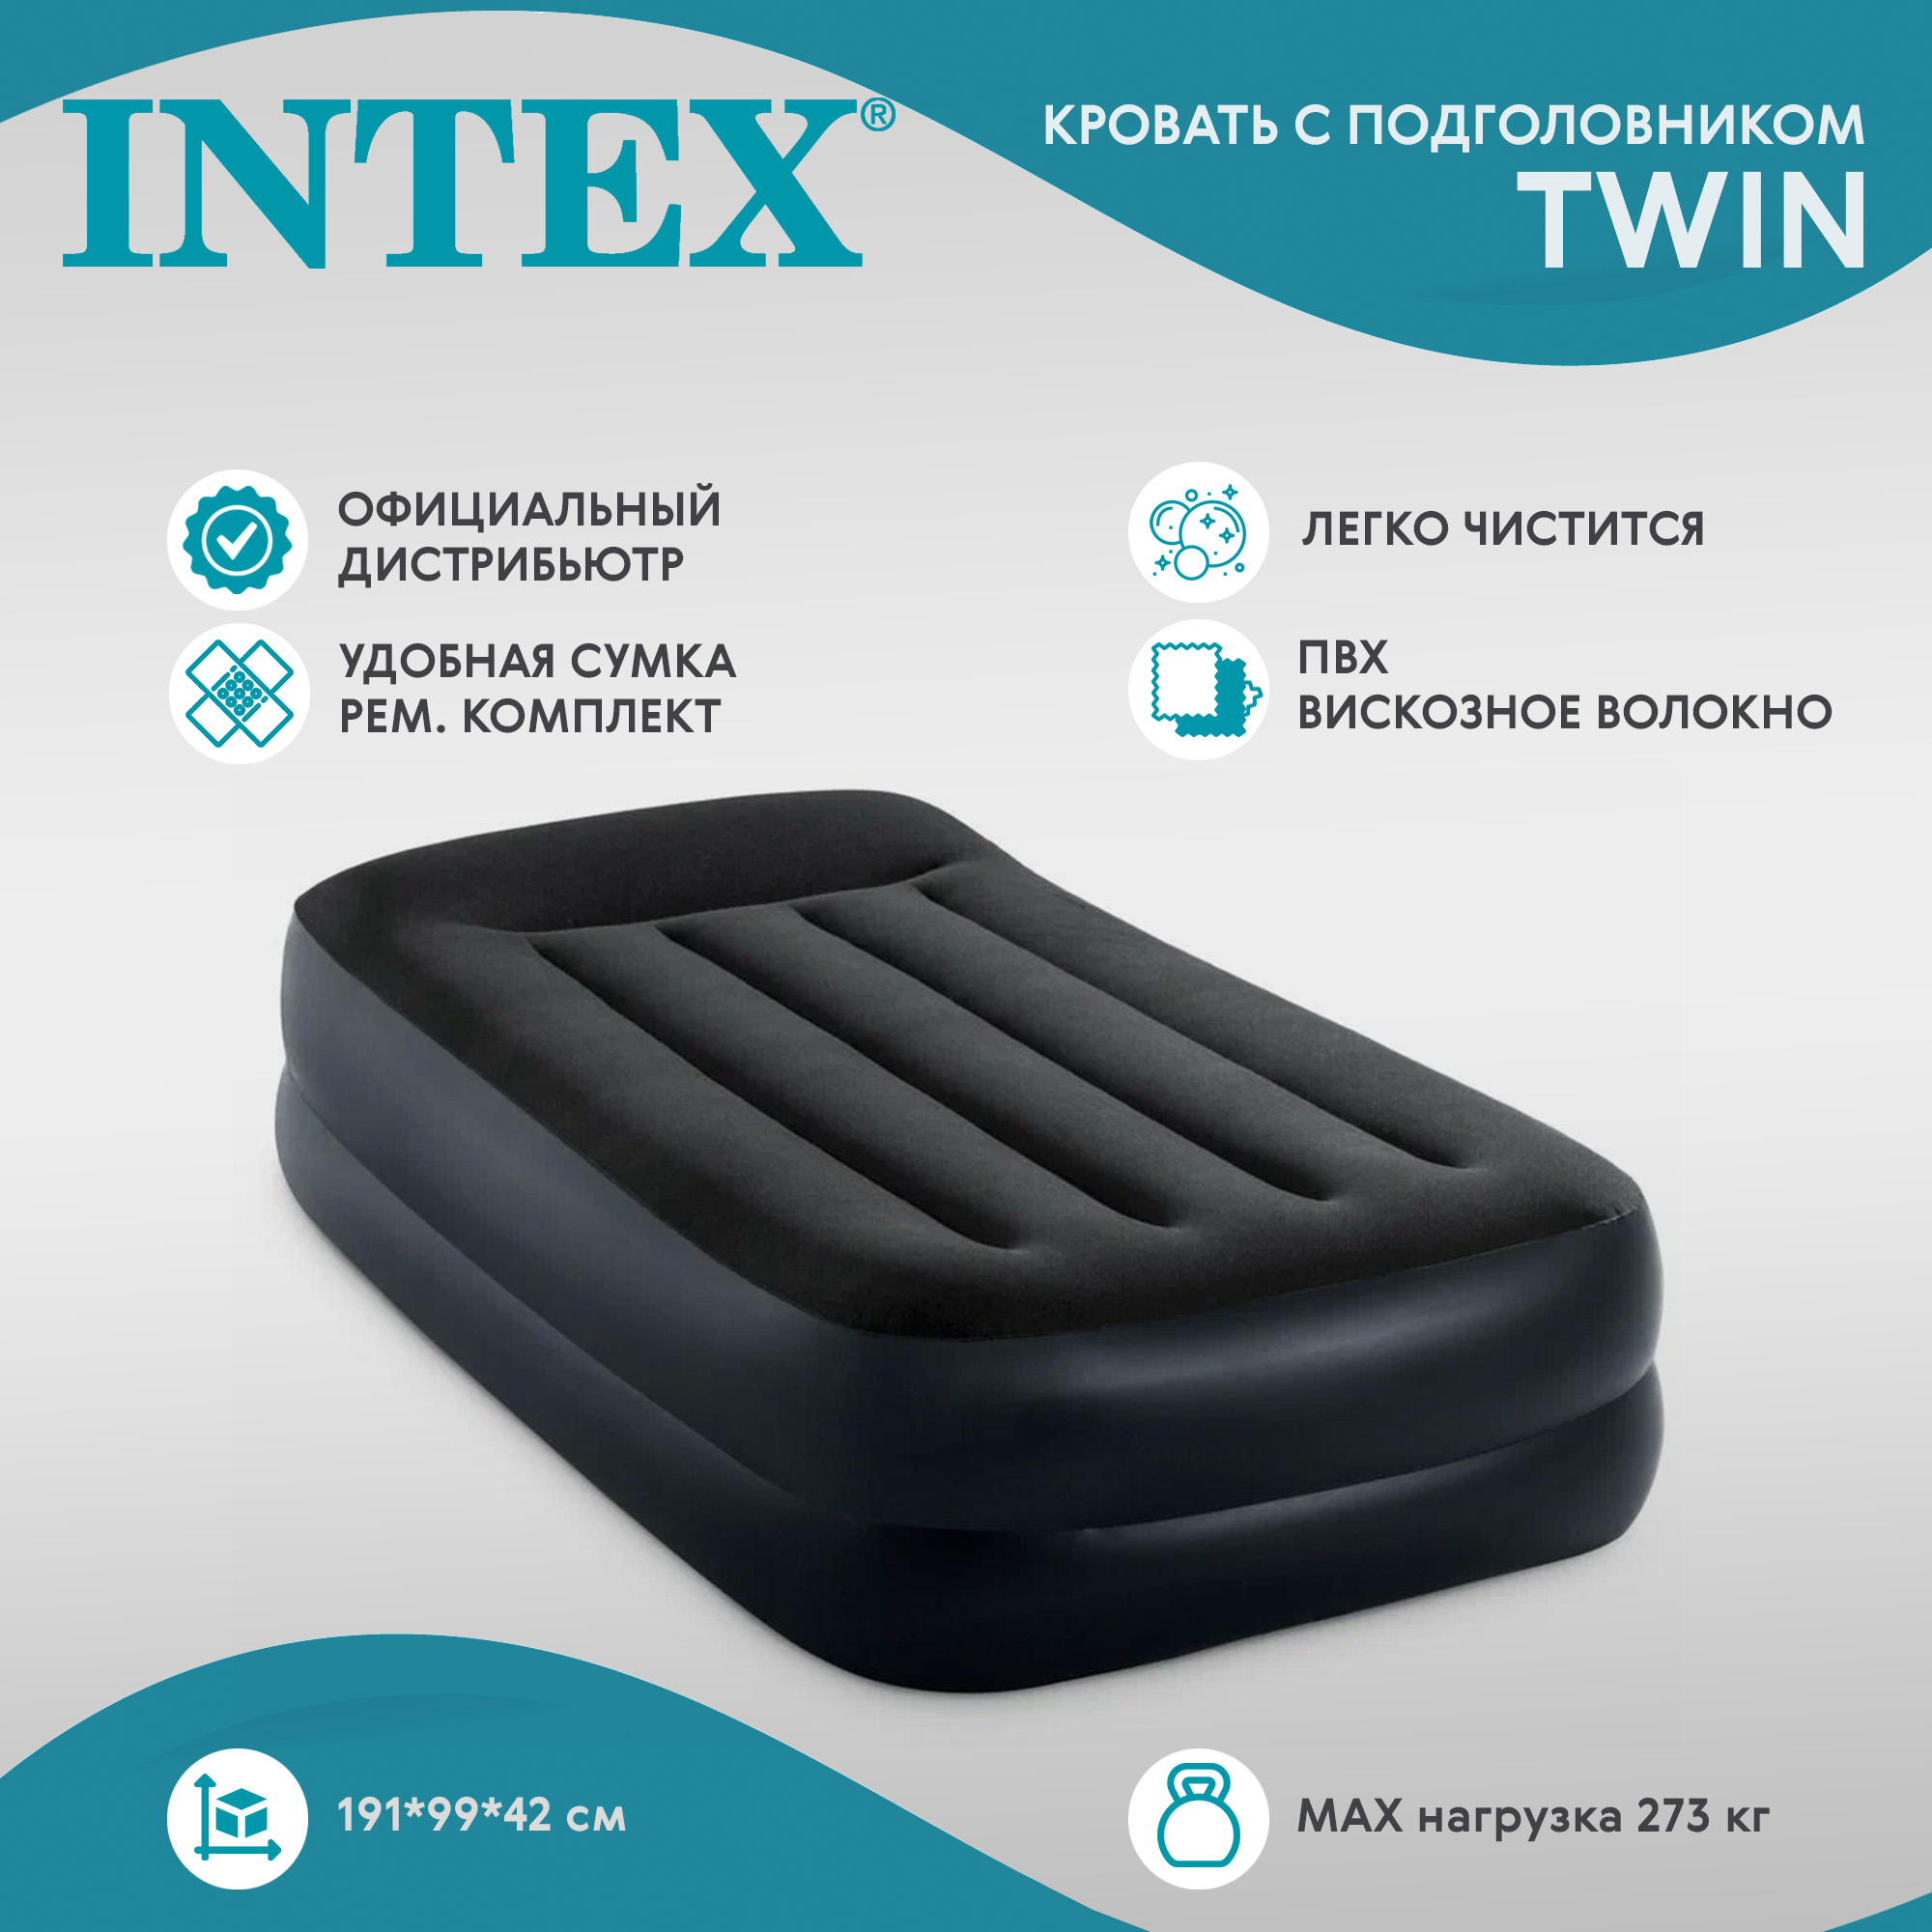 Кровать с подголовником Intex twin с насосом (64122NP), цвет черный - фото 2